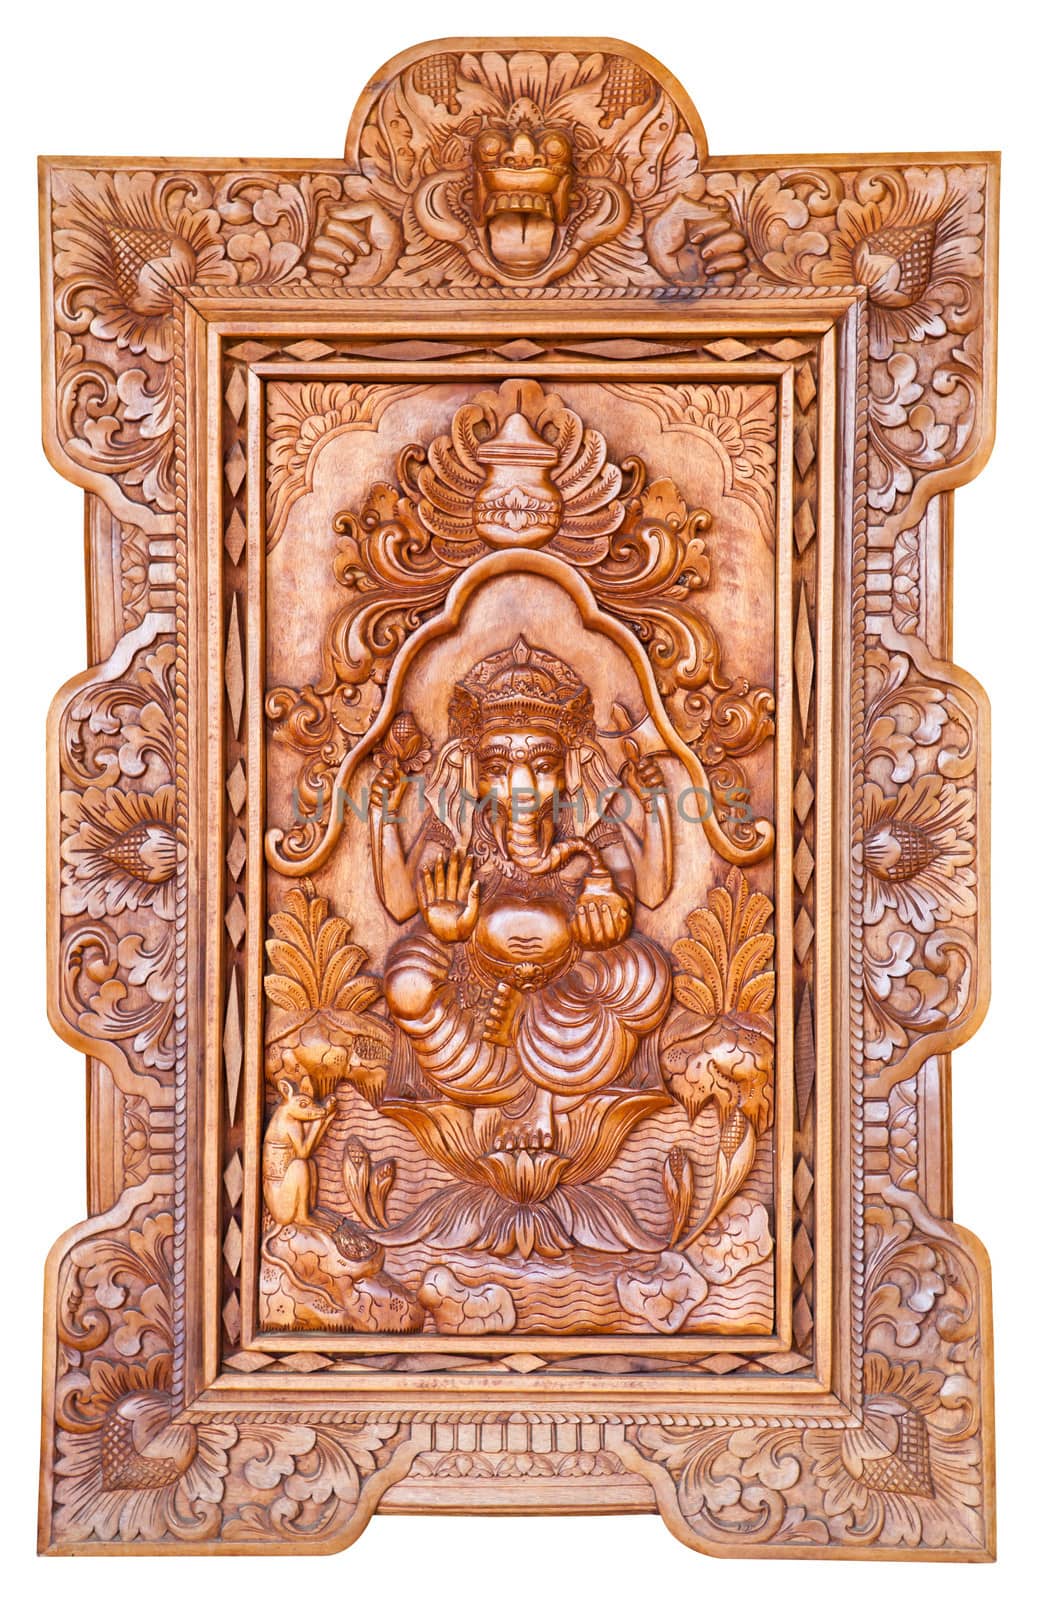 Hindu God Ganesh carving wood on white background